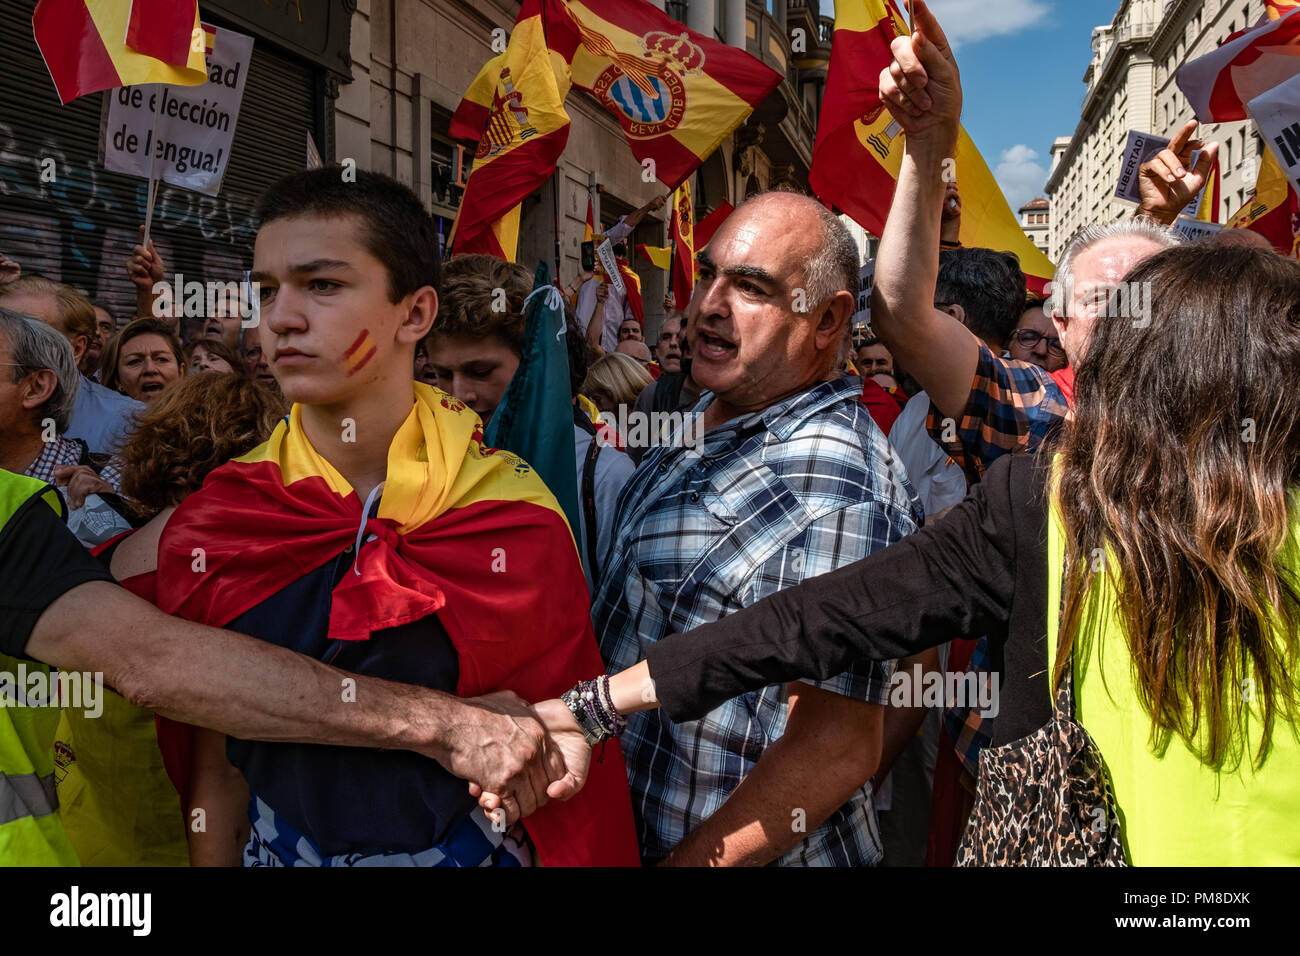 Una gioventù è visto trattati in una bandiera con il suo volto dipinto con le bandiere durante la protesta. Più di 1.500 persone chiamato dagli enti a favore della lingua spagnola hanno marciato attraverso il centro di Barcellona per protestare contro l'imposizione della lingua catalana in spagnolo. Alla fine della dimostrazione, gruppi di nazionalisti spagnoli e catalani hanno sovereignists stato affrontato sotto la vigilanza della polizia catalana. Foto Stock